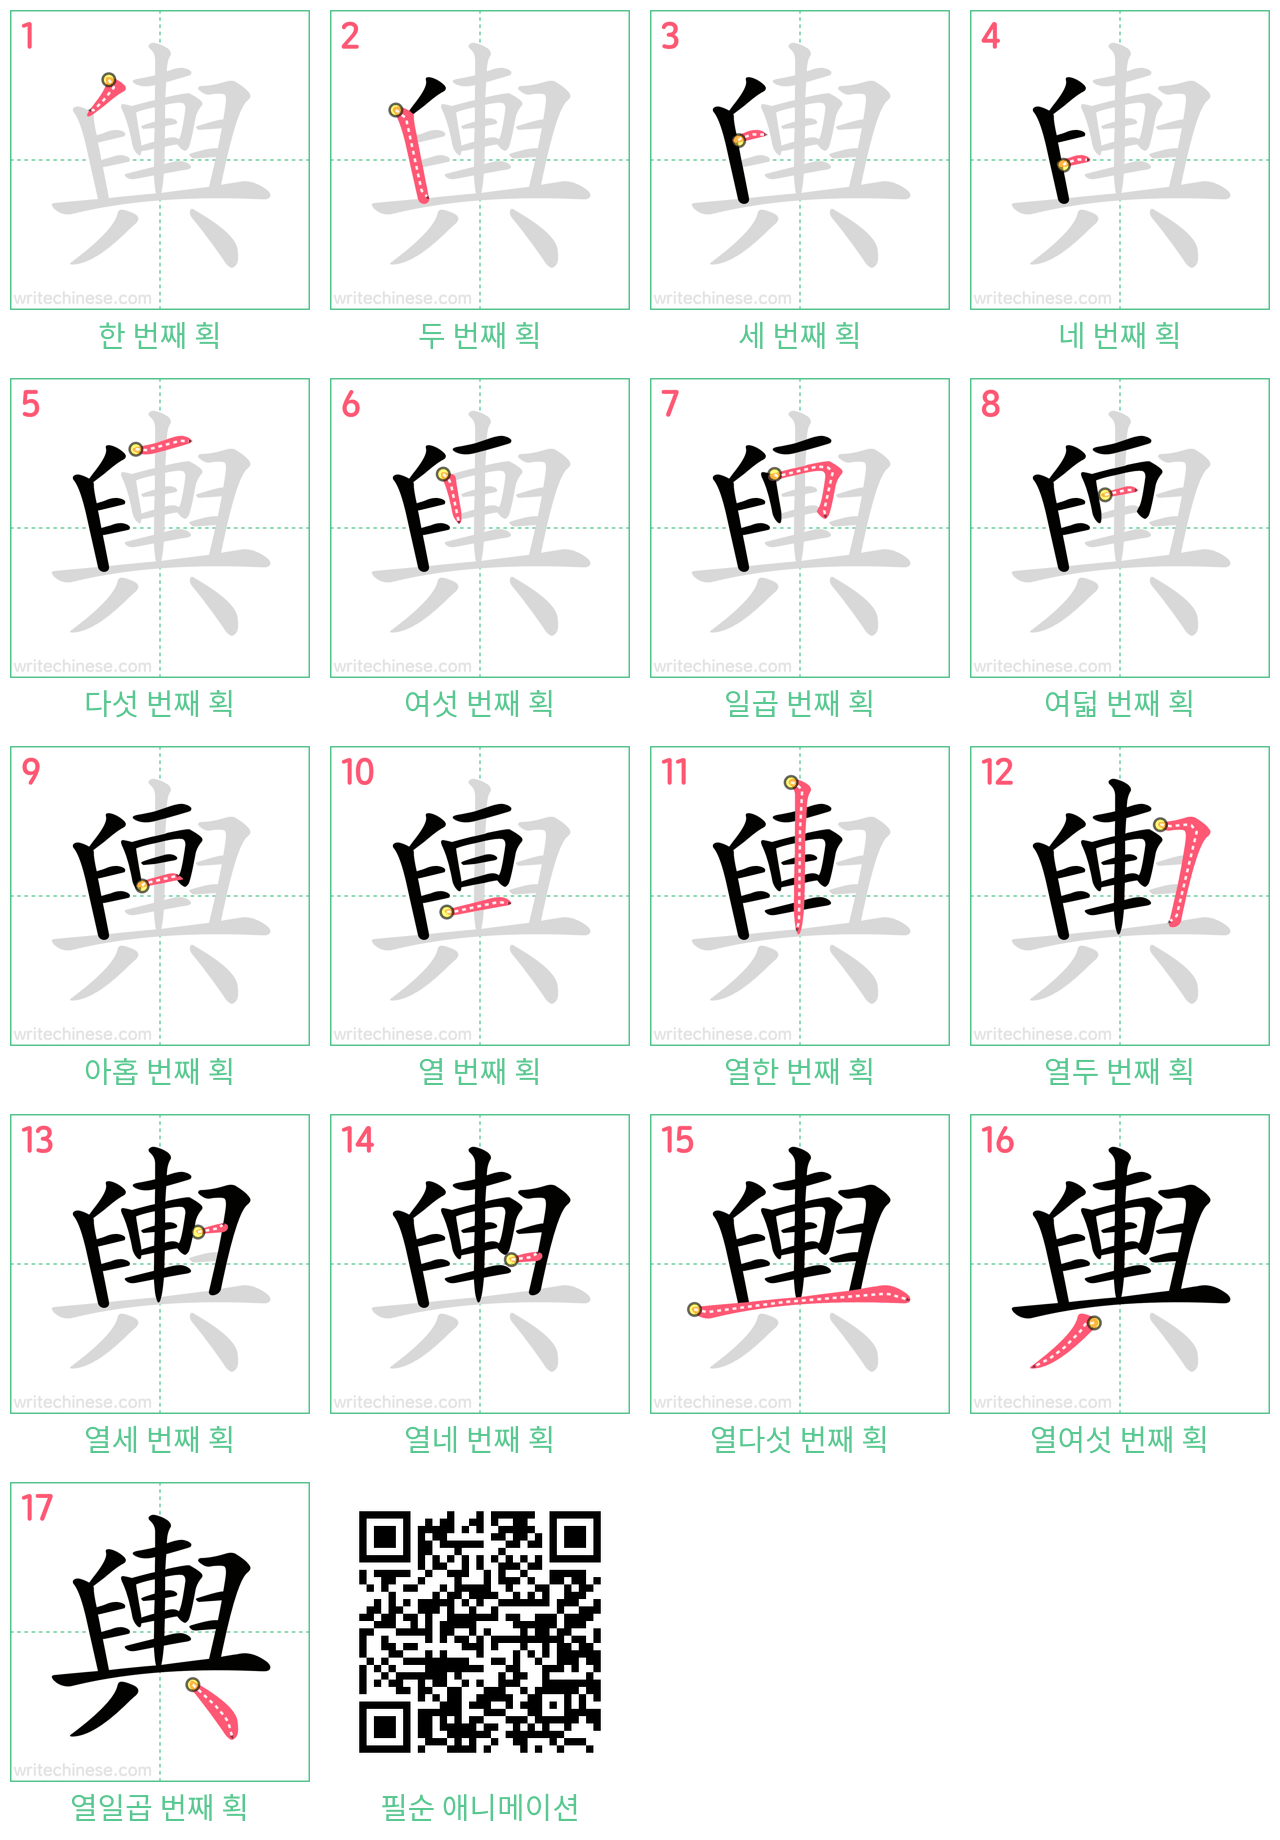 輿 step-by-step stroke order diagrams